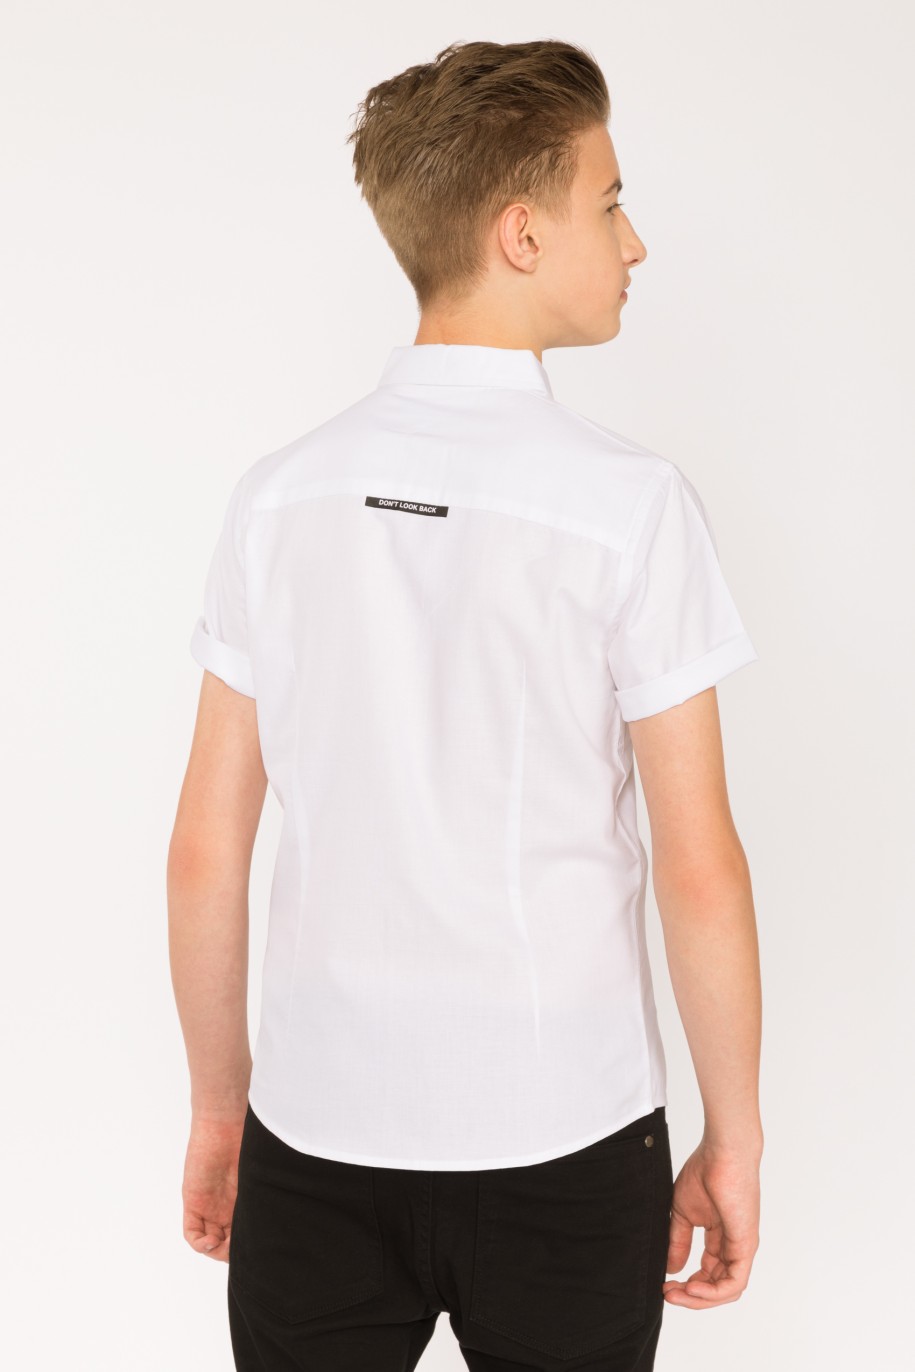 Biała koszula z krótkim rękawem, kieszenią i nadrukiem dla chłopaka - 28435